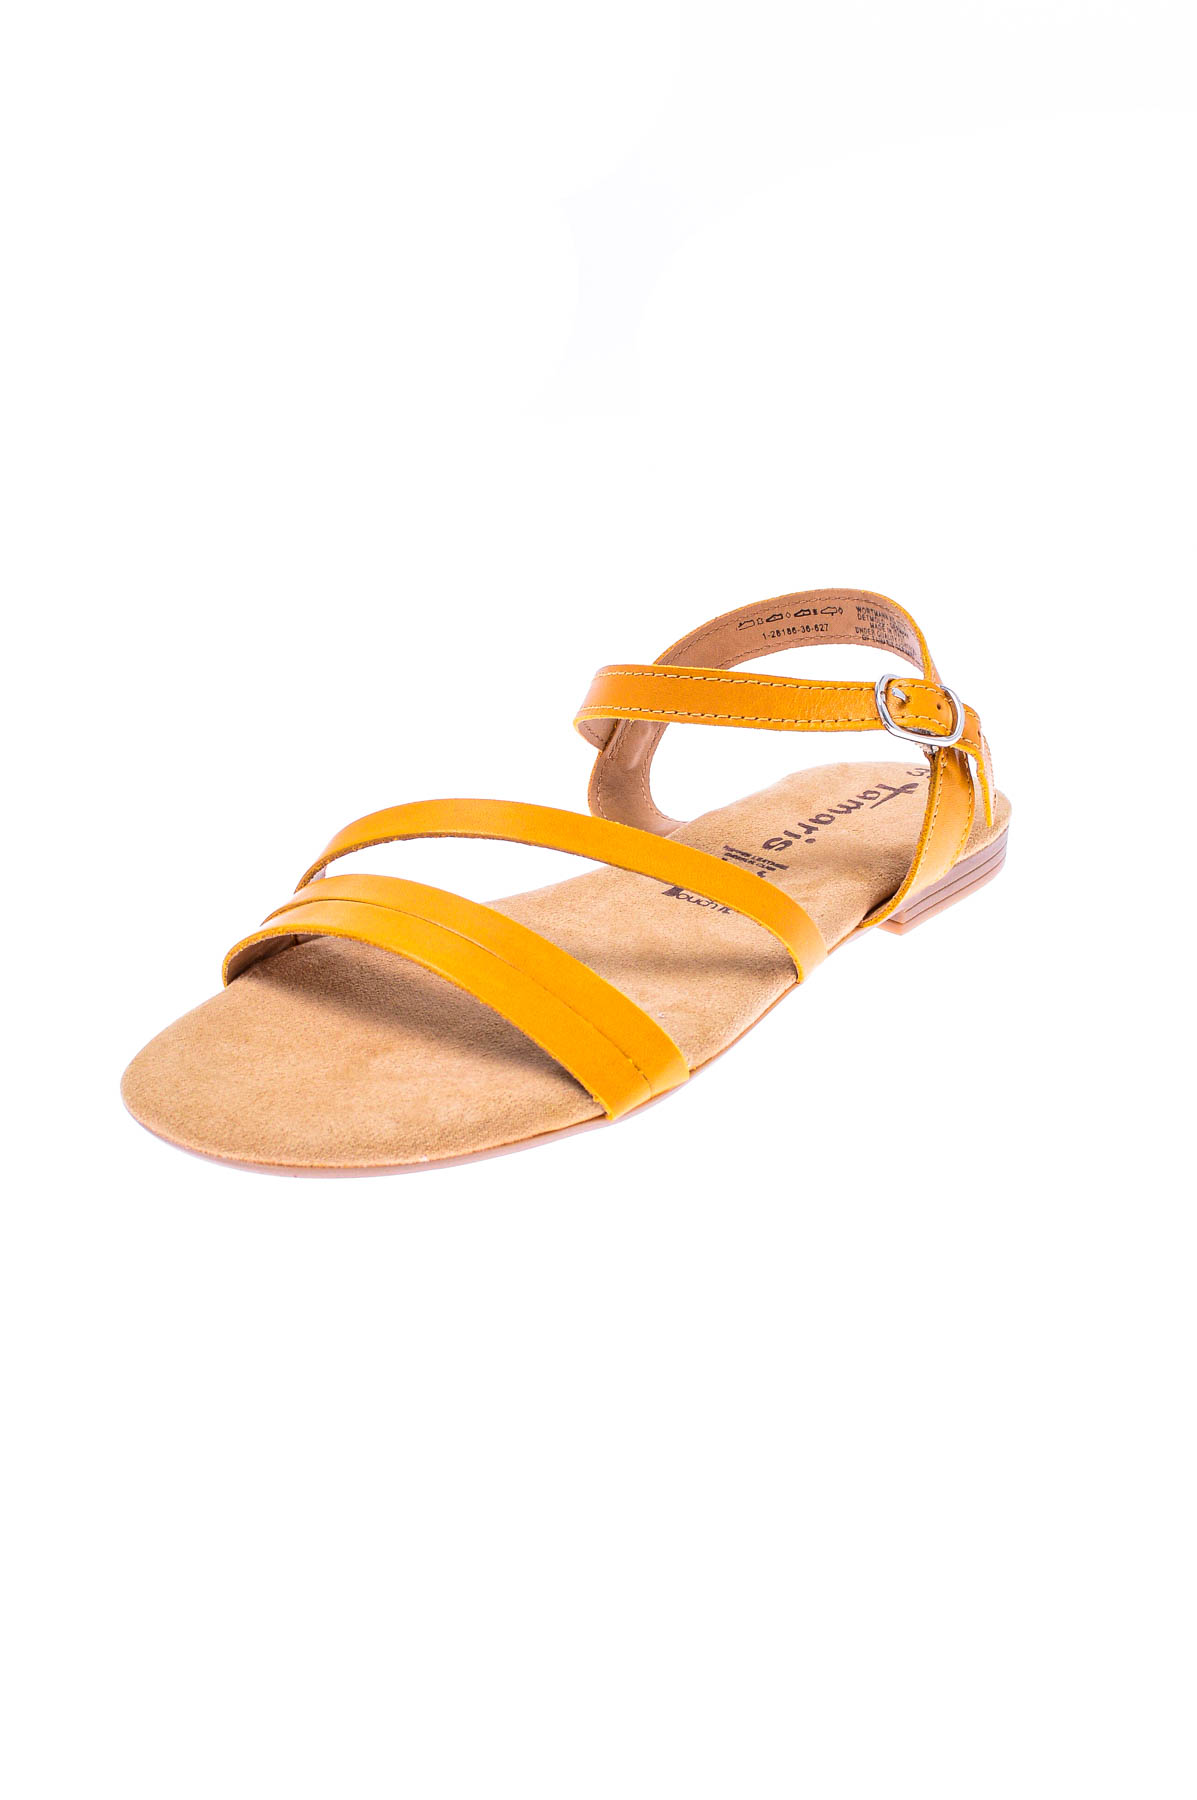 Women's sandals - Tamaris - 1